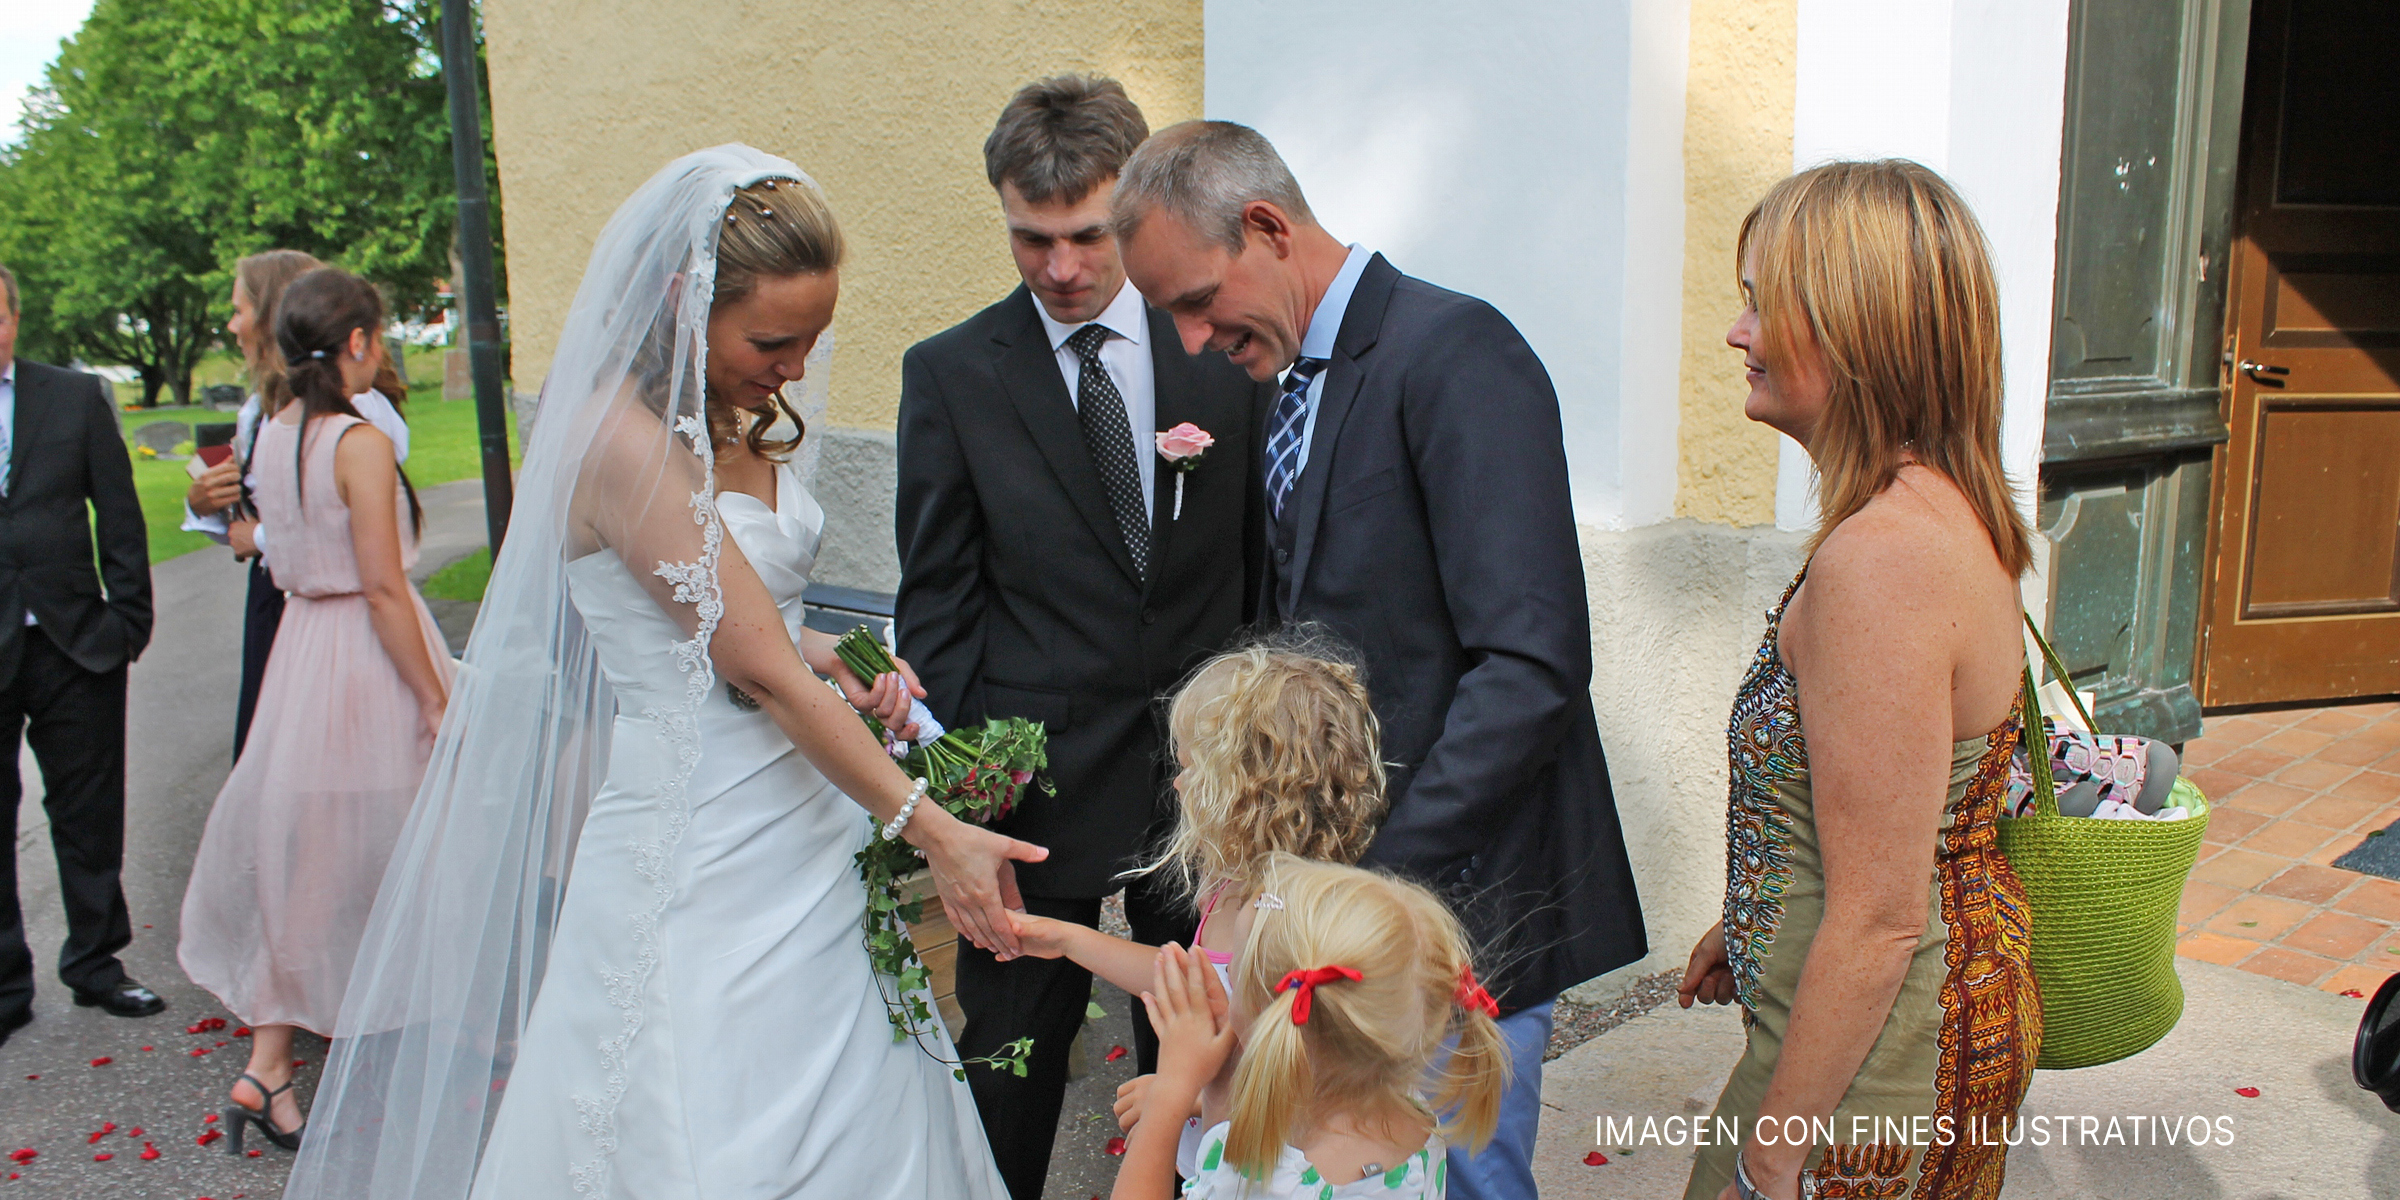 Novia feliz con las niñas de las flores el día de su boda | Foto: Flickr.com/sebilden (CC BY 2.0)